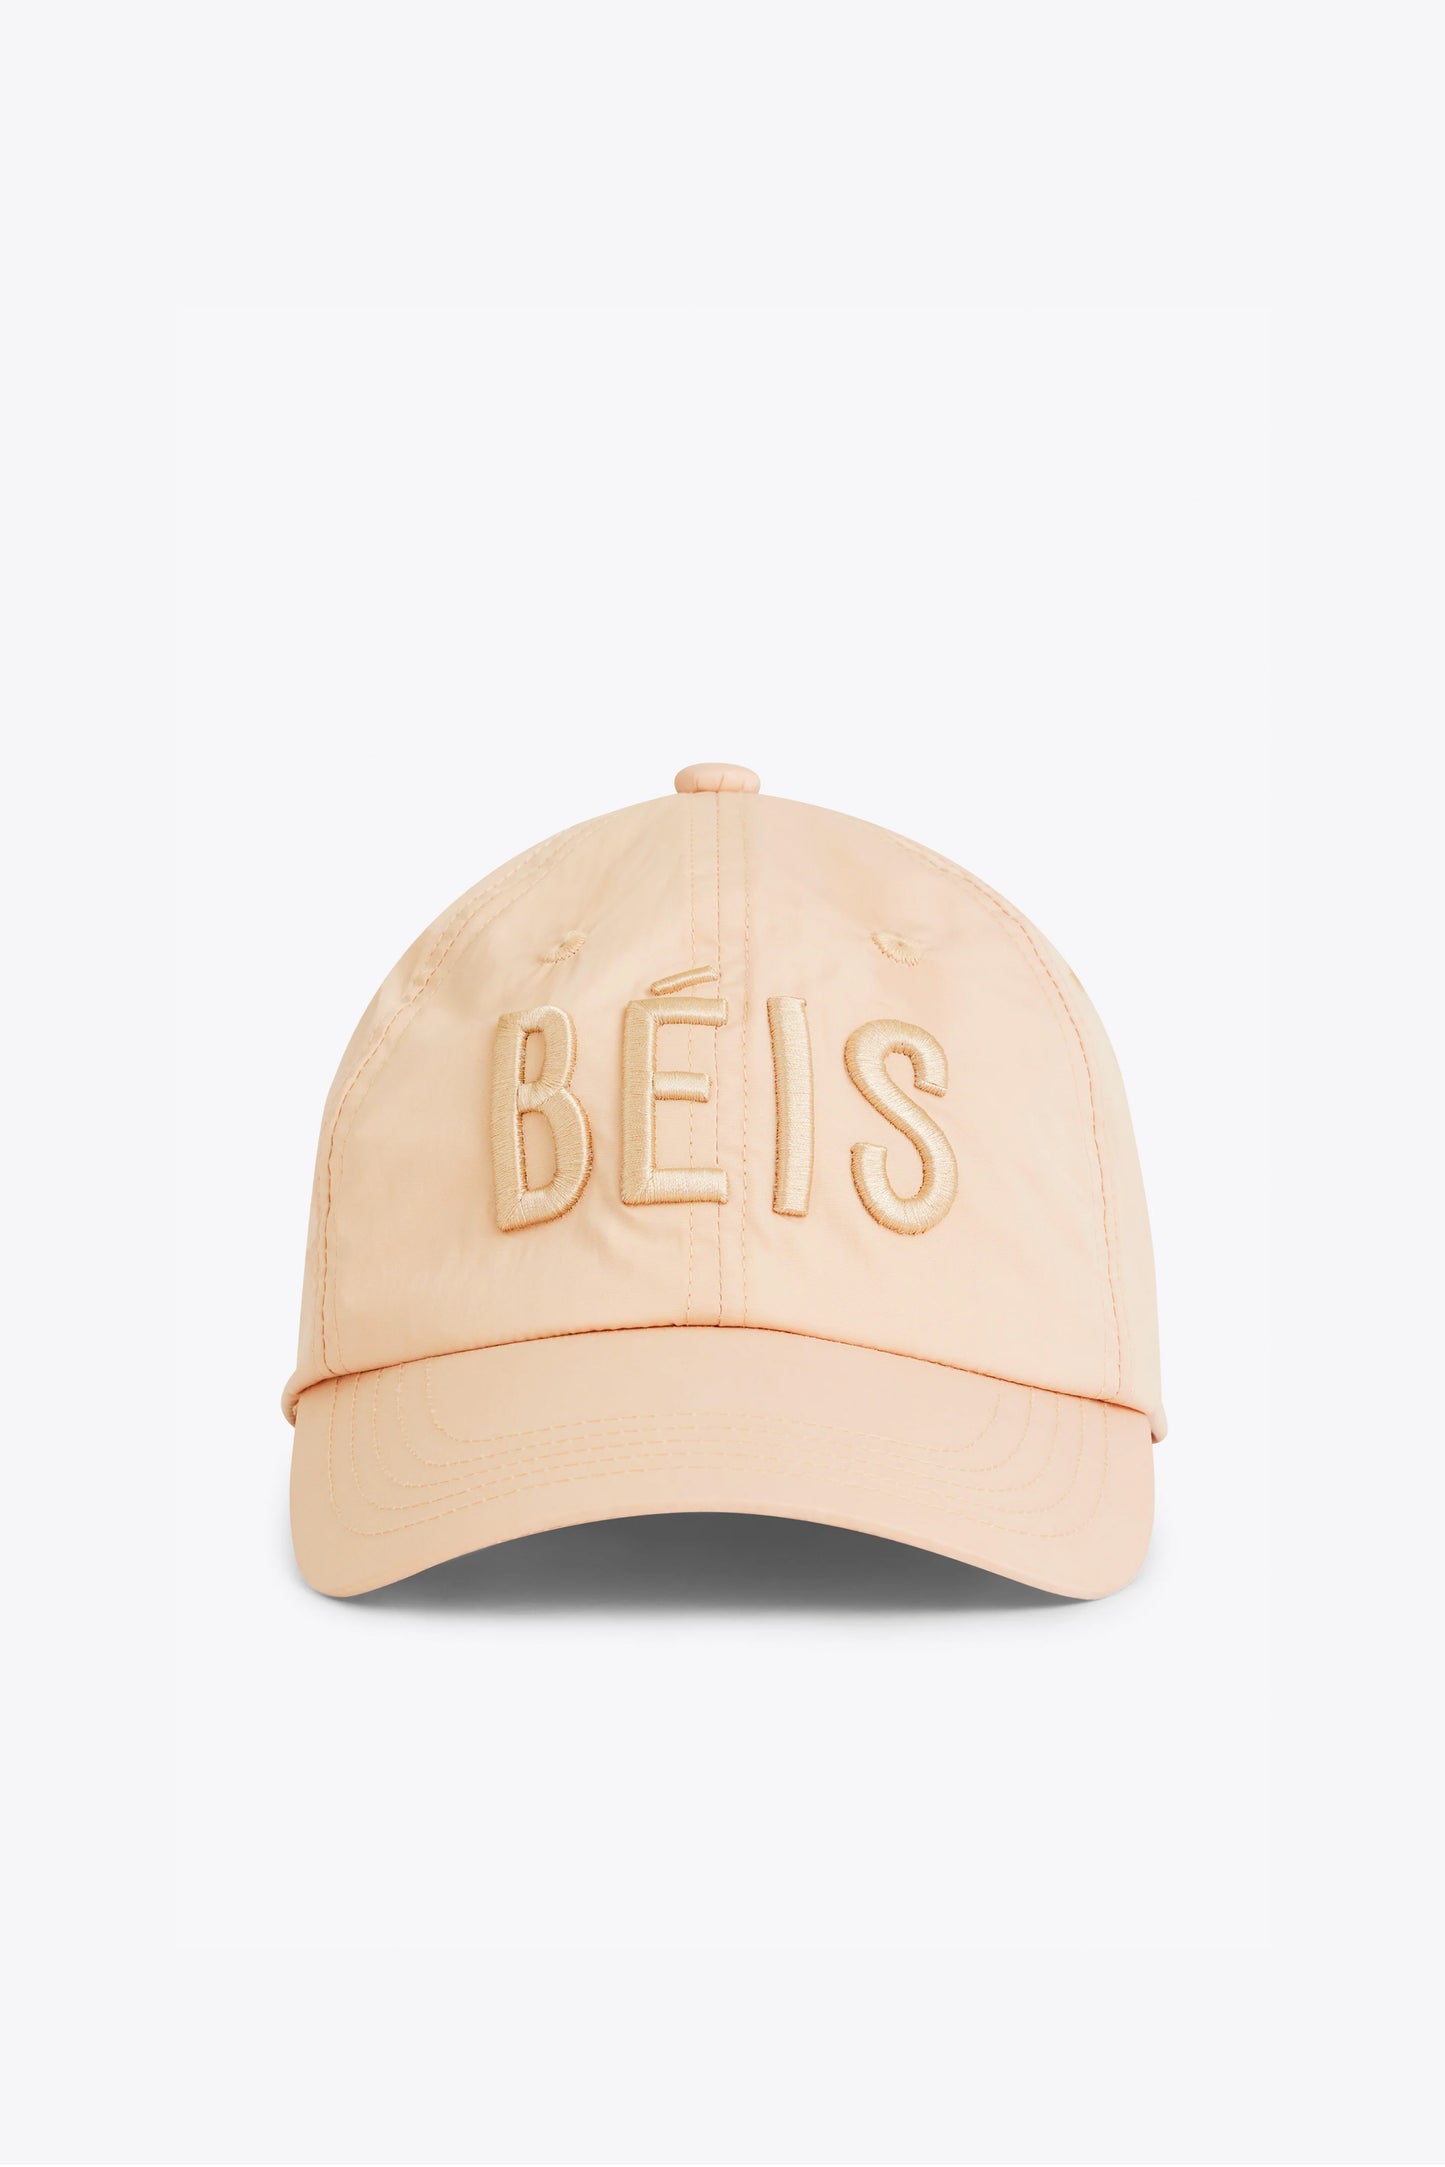 BÉIS 'The BÉISball Cap' in Beige - Basic Beige Baseball Hat